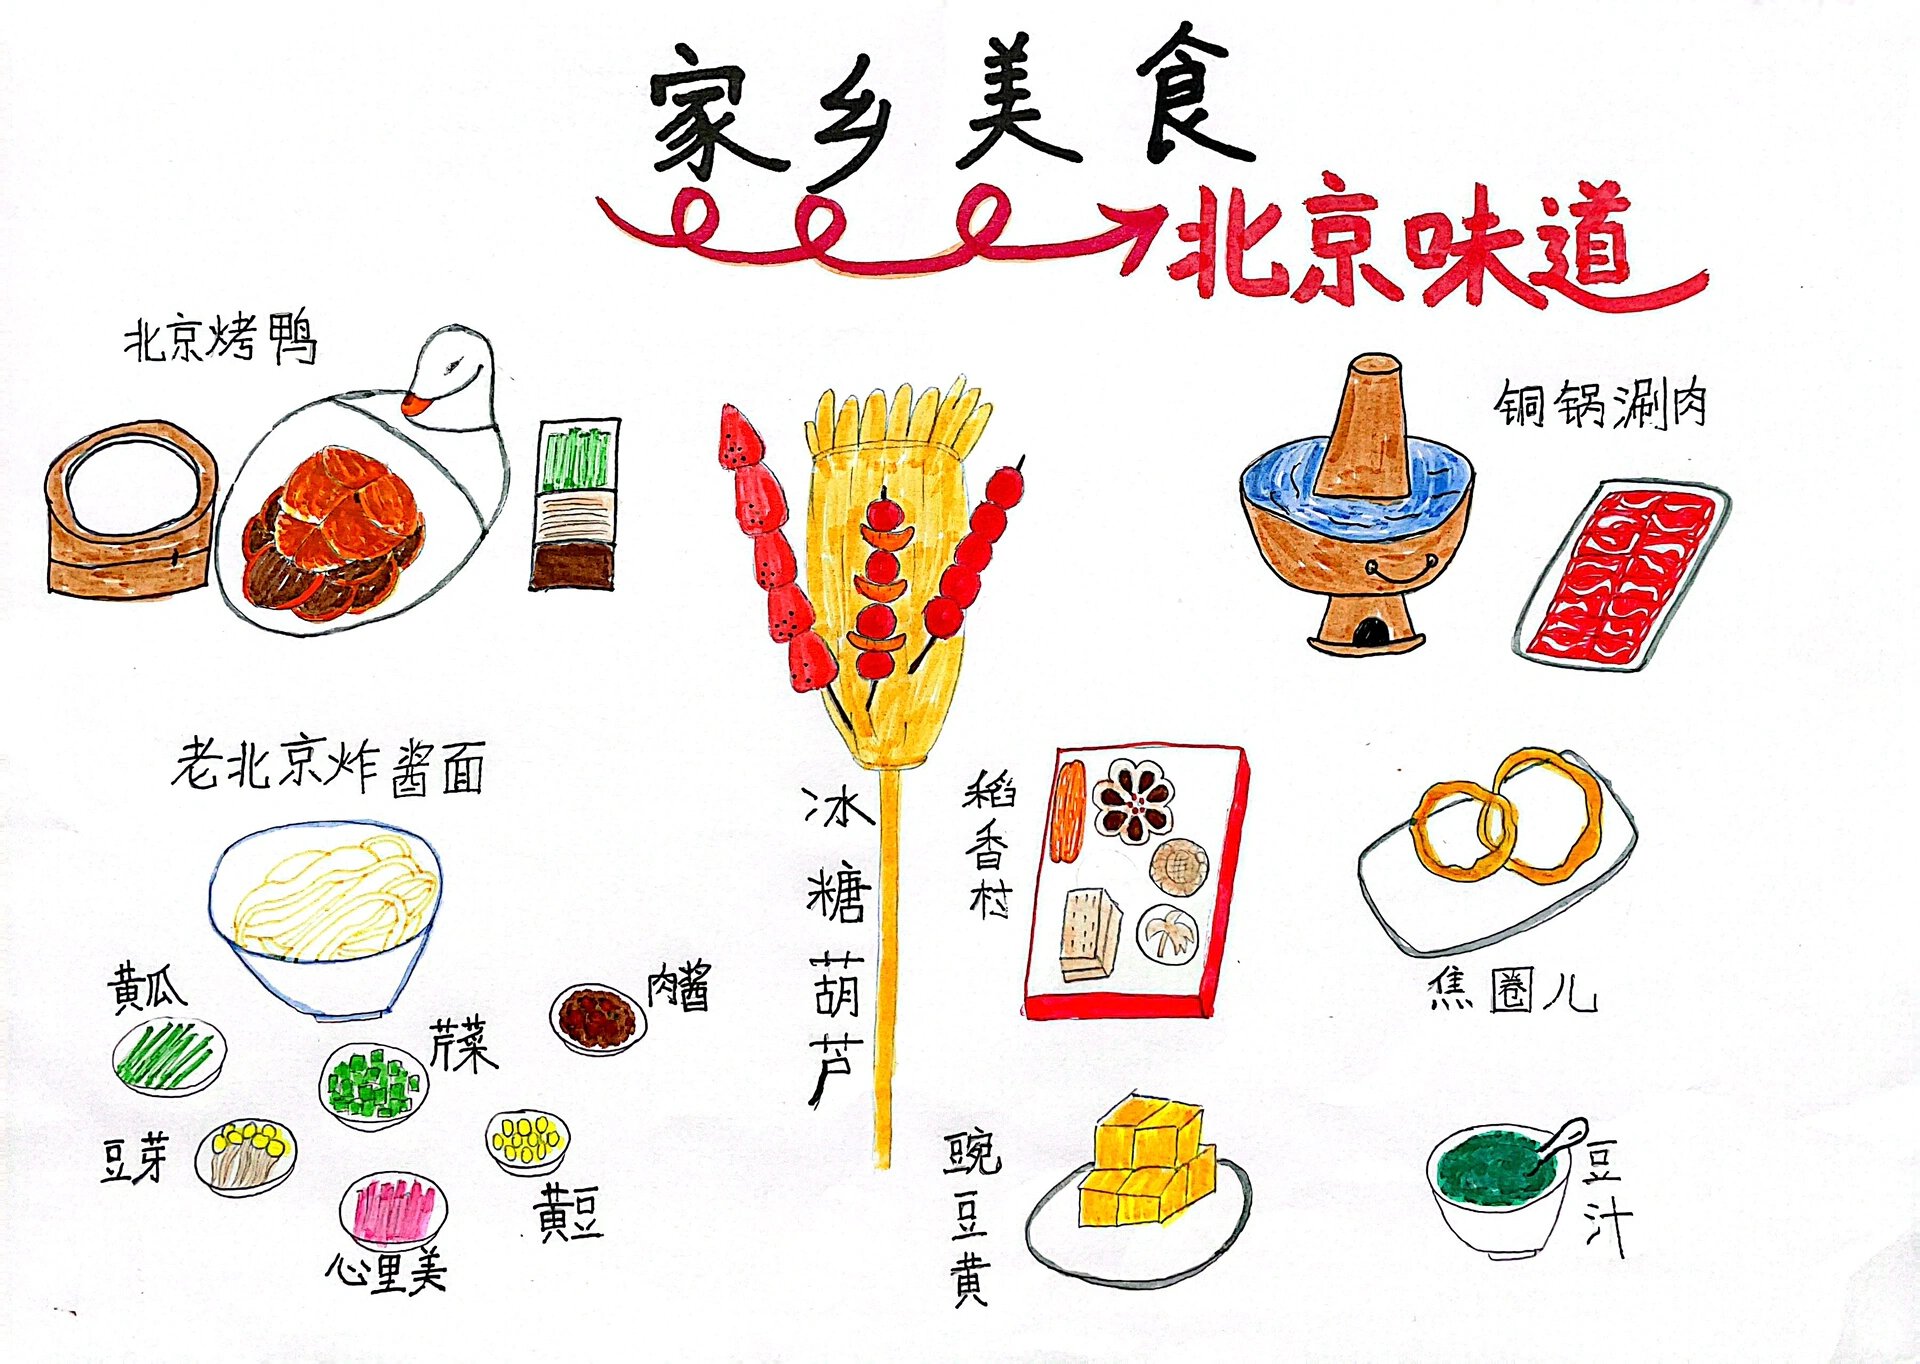 美食之北京味道95手抄报 老北京美食:色泽红润,外皮酥脆的北京烤鸭